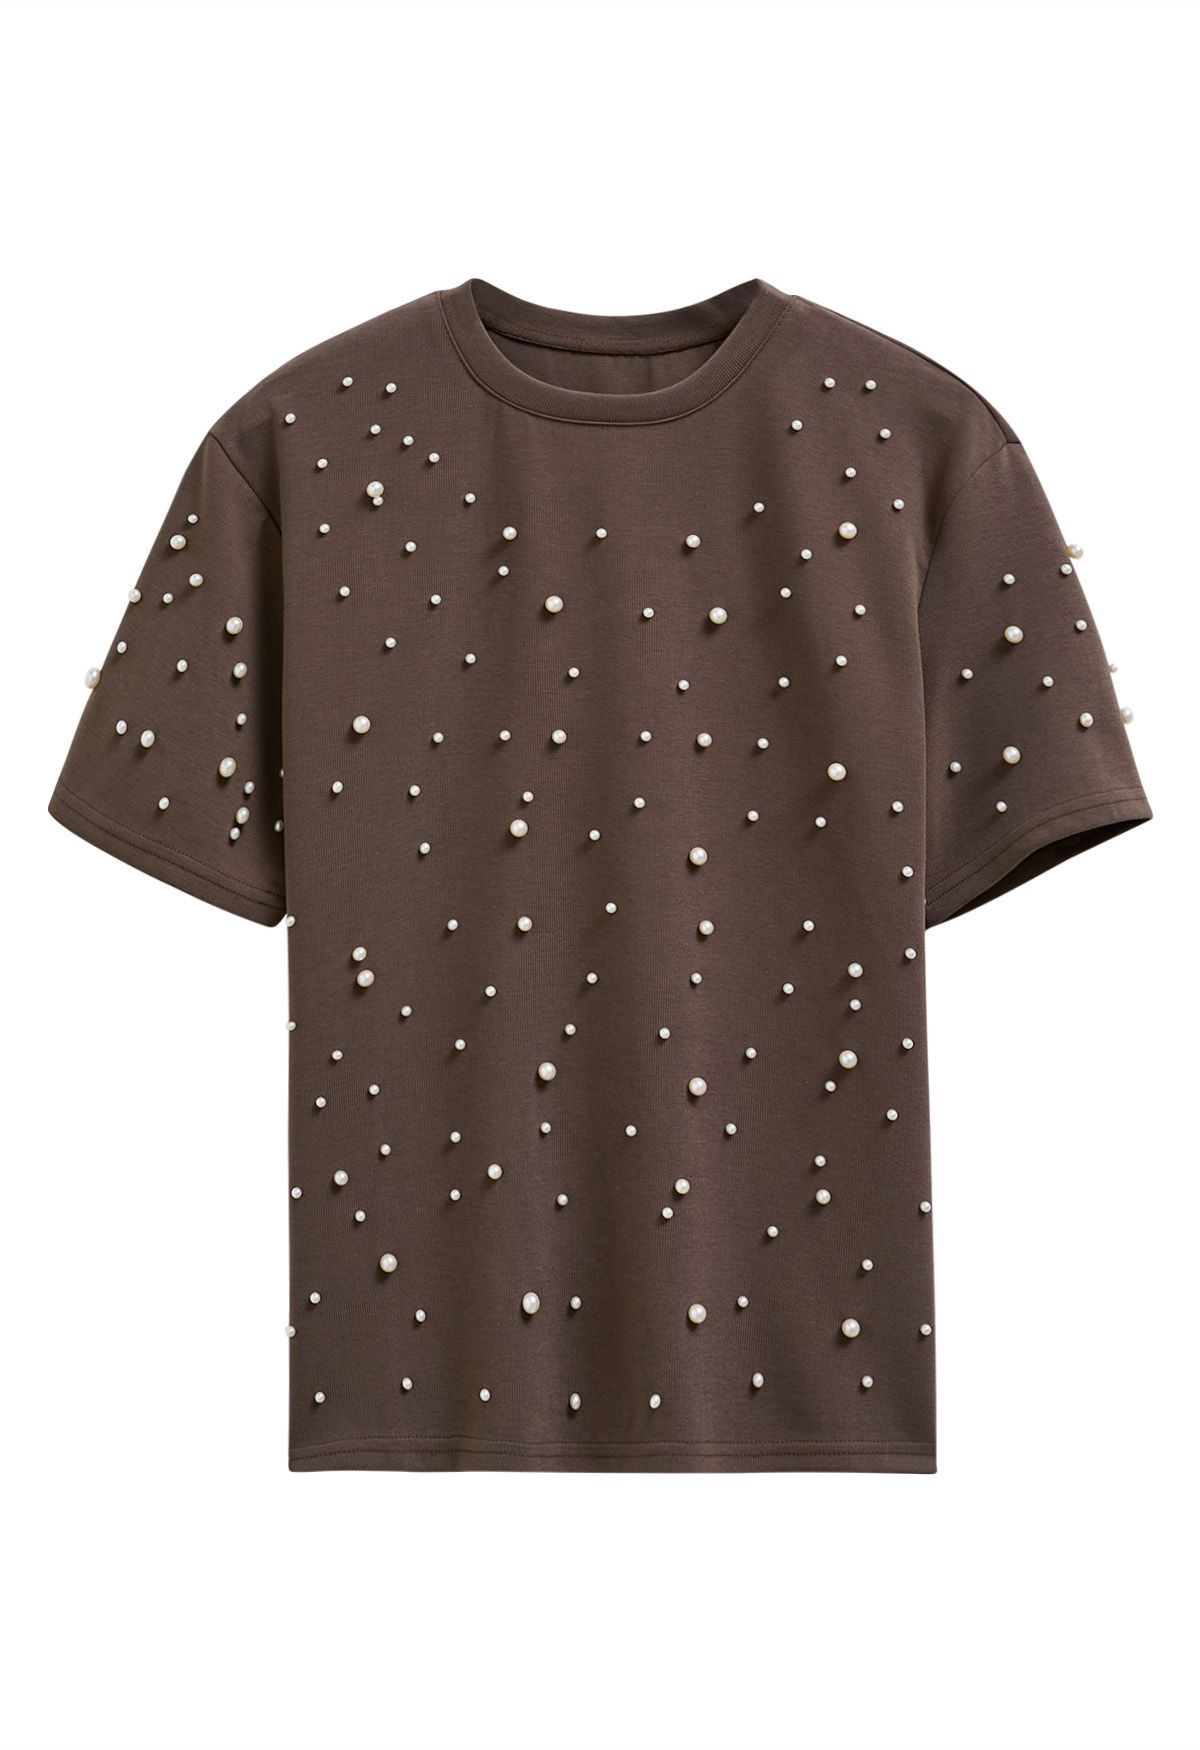 T-shirt sophistiqué à bordure perlée en marron